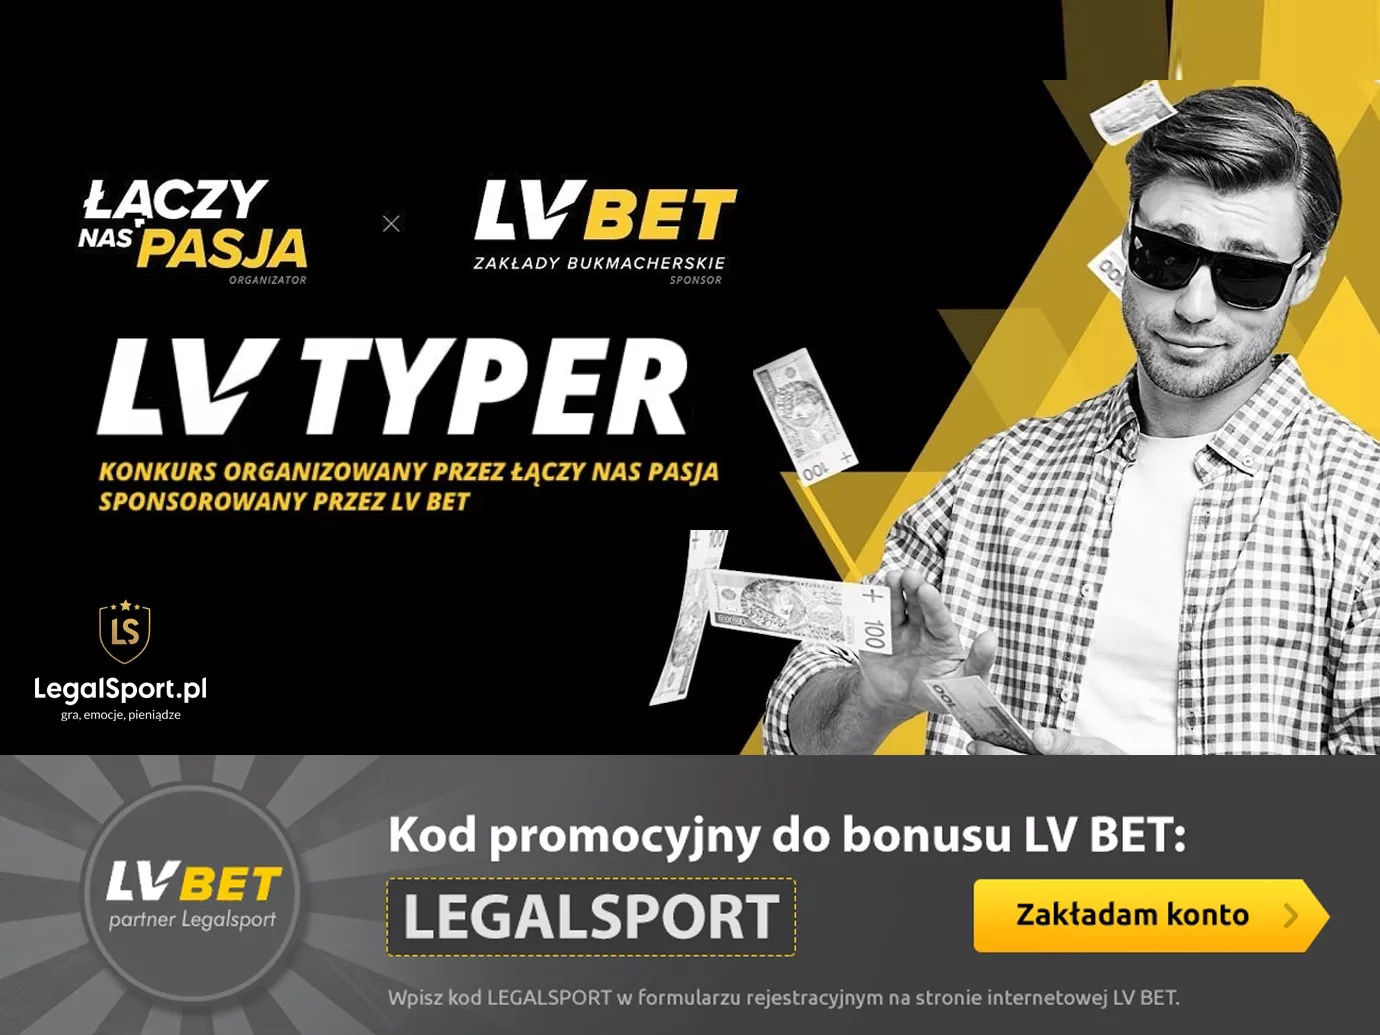 LV Typer - promocja dla graczy LVBET z pulą nagród 250 000 zł